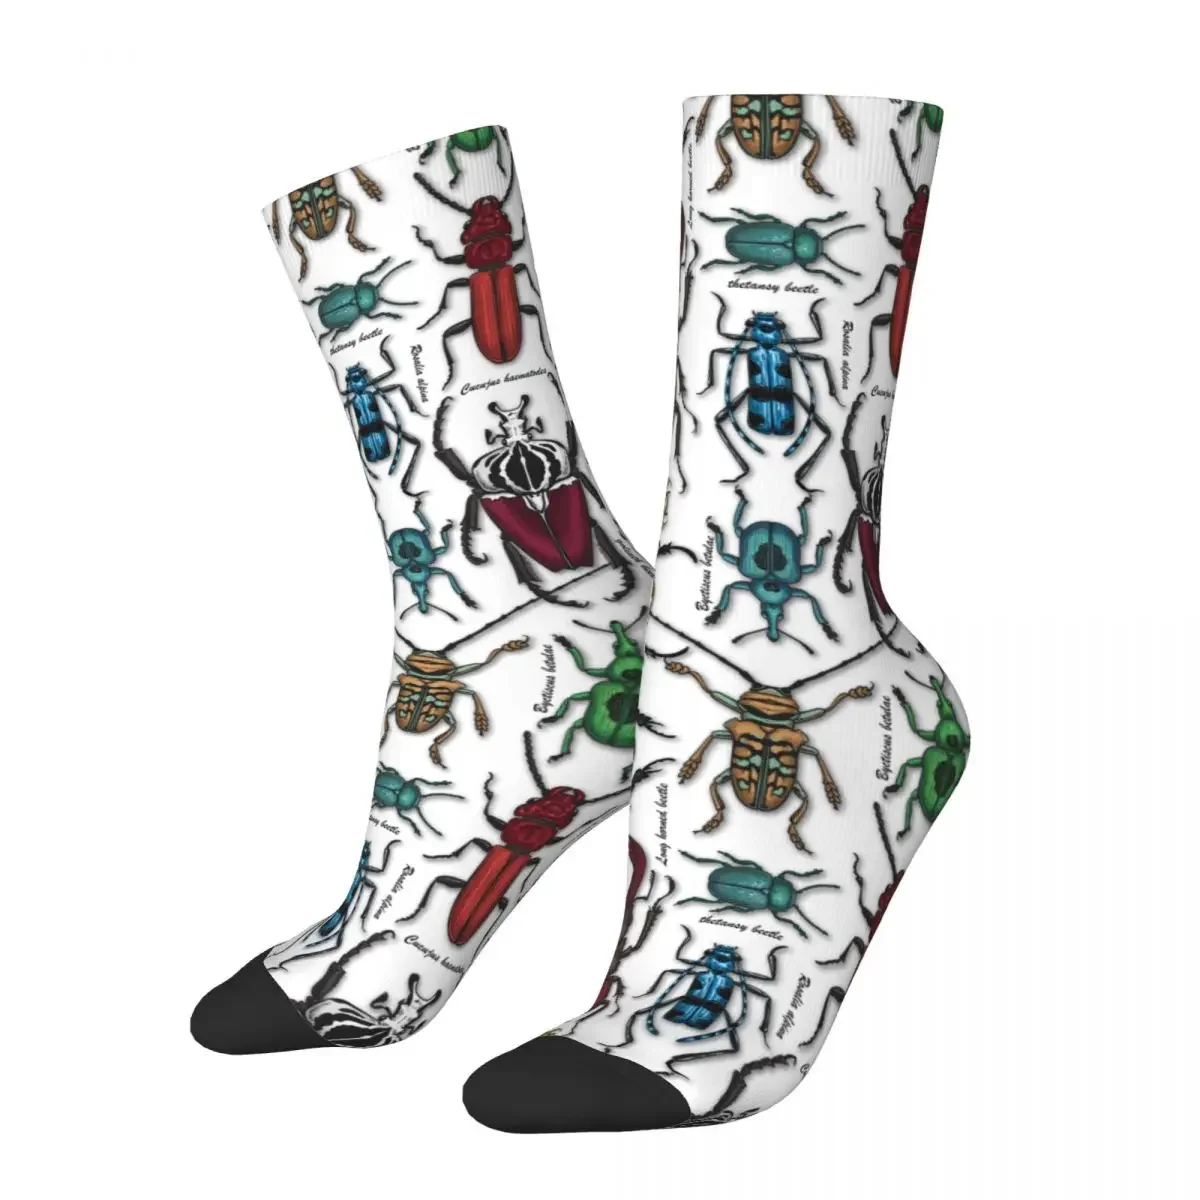 

Harajuku Beetles On White Soccer Socks 3D Printing Crew Socks for Women Men